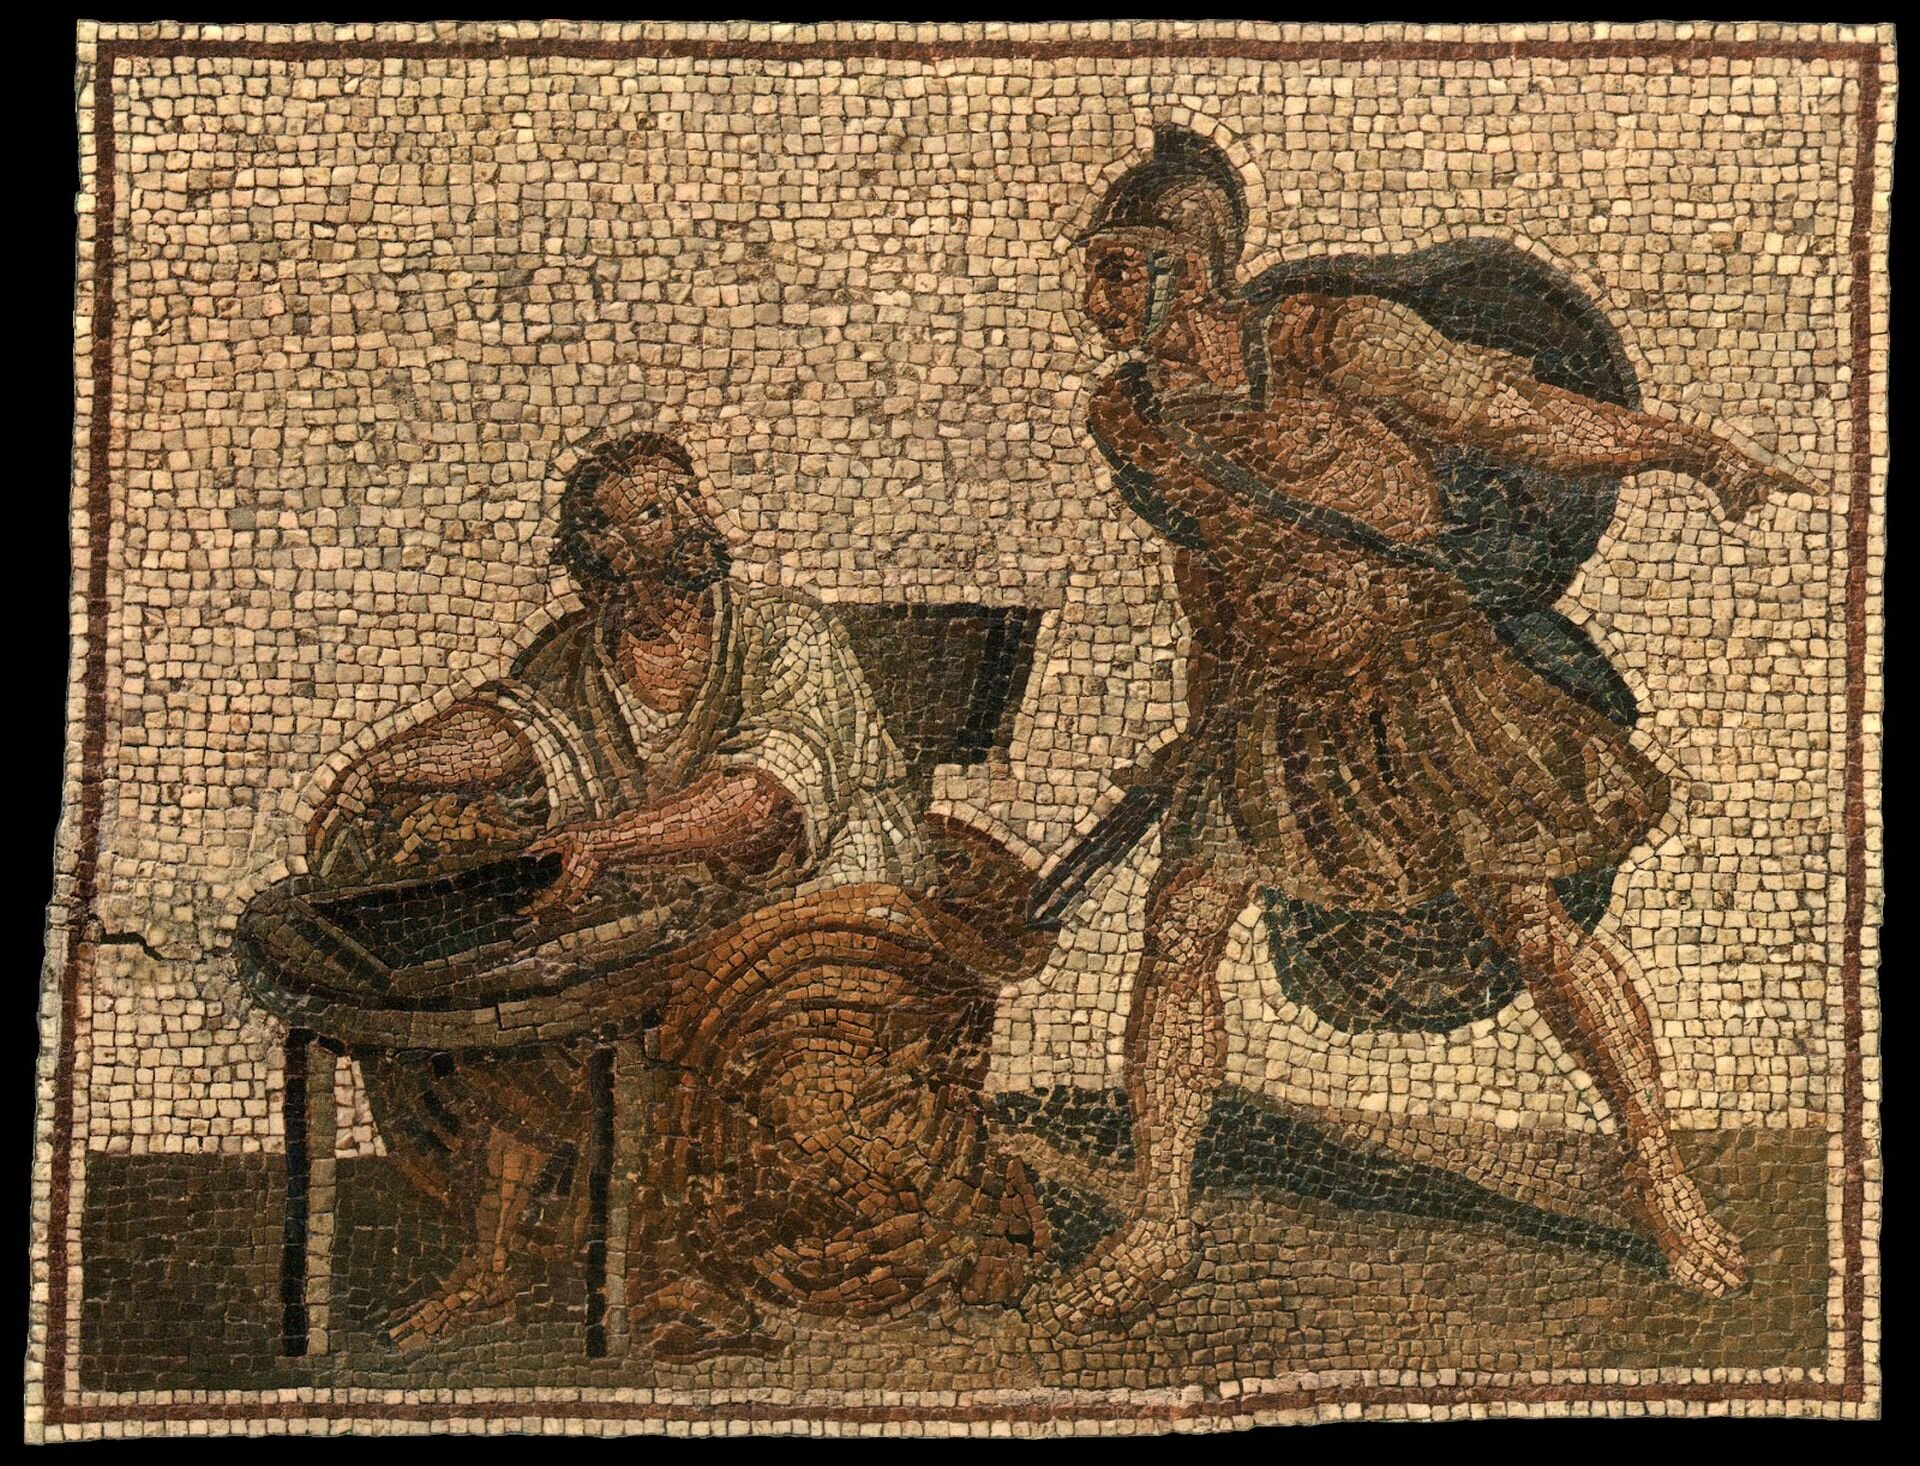 Ilustracja przedstawia mozaikę zatytułowaną „Archimedes i rzymski legionista”. W centrum ukazana jest postać mężczyzny w lekkiej zbroi, hełmie, z mieczem oraz dużą tarczą na plecach. Jest zwrócony w kierunku siedzącego przy stoliku Archimedesa. Uczony ubrany jest w białą szatę. Trzyma leżące na stoliku liczydło. Legionista gestem wskazuje mu wyjście.